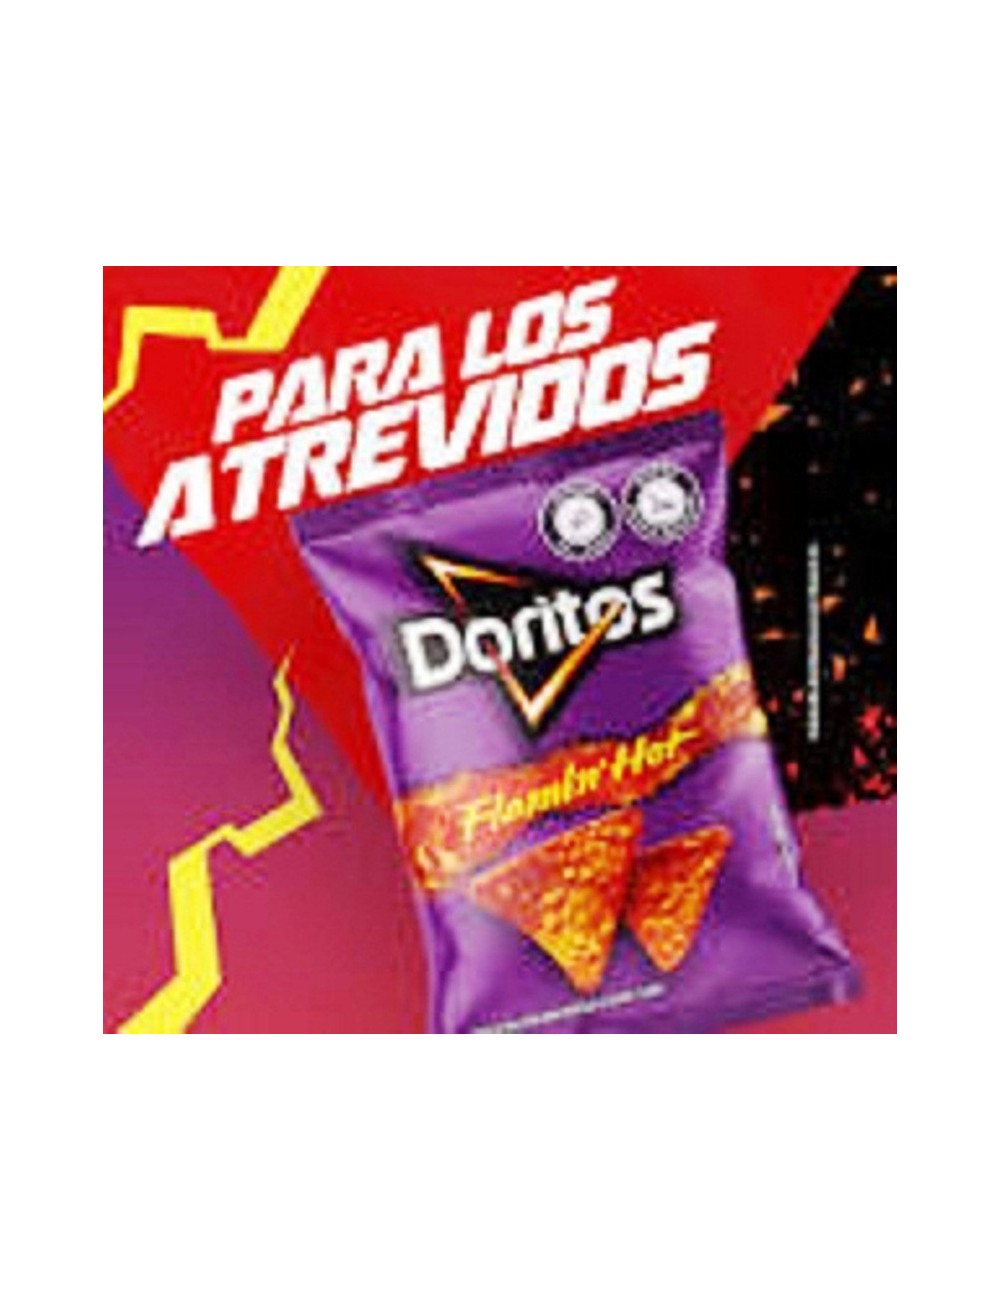 Doritos Flamin Hot 15 UDS de 75 GR  Snack de Maíz Picante ( Sin Tarificar )